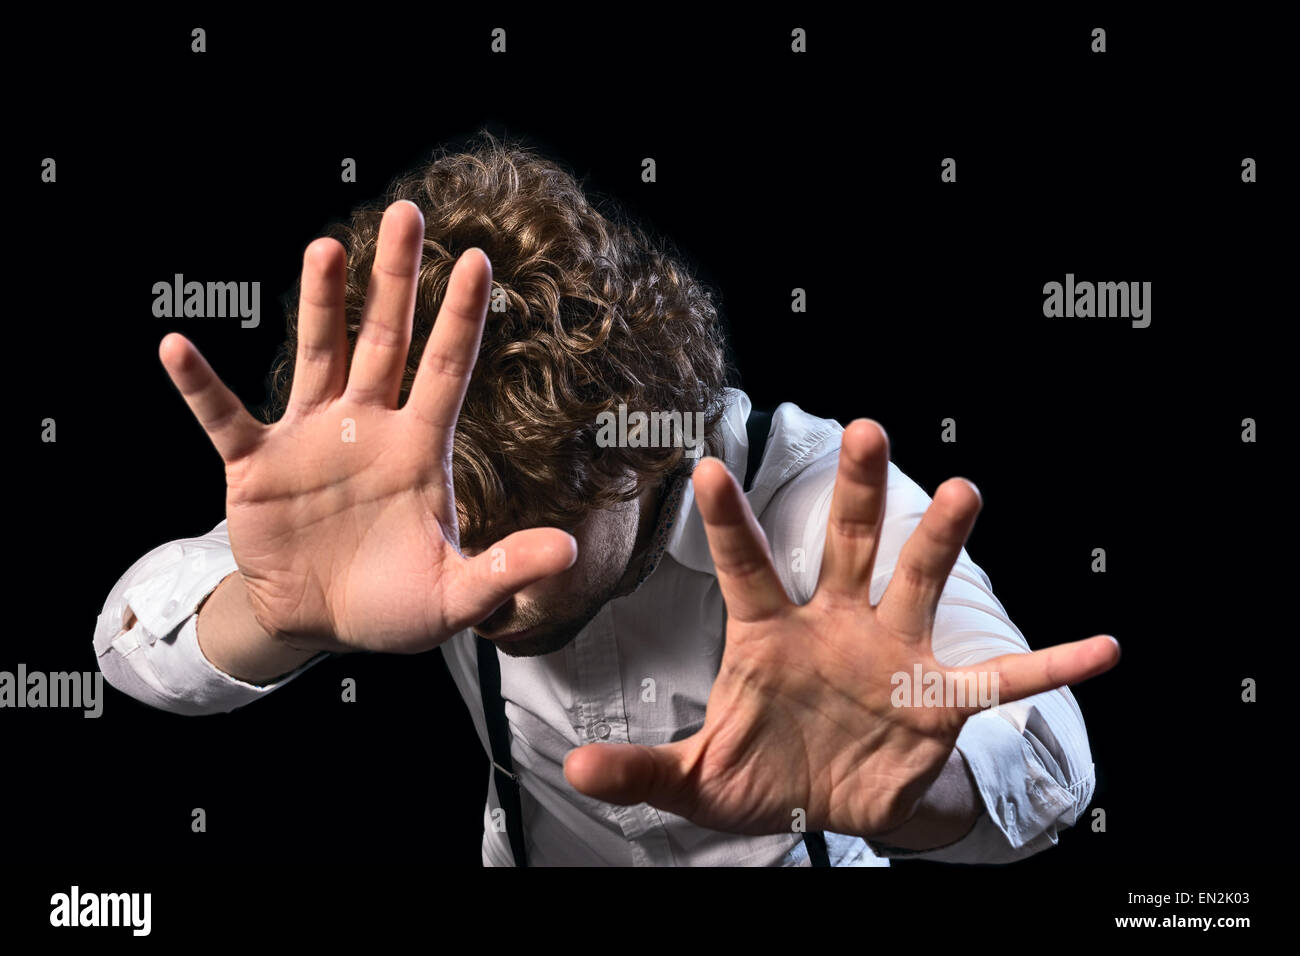 Bild von einem Mann, der Magie mit seinen Händen ausführt Stockfoto